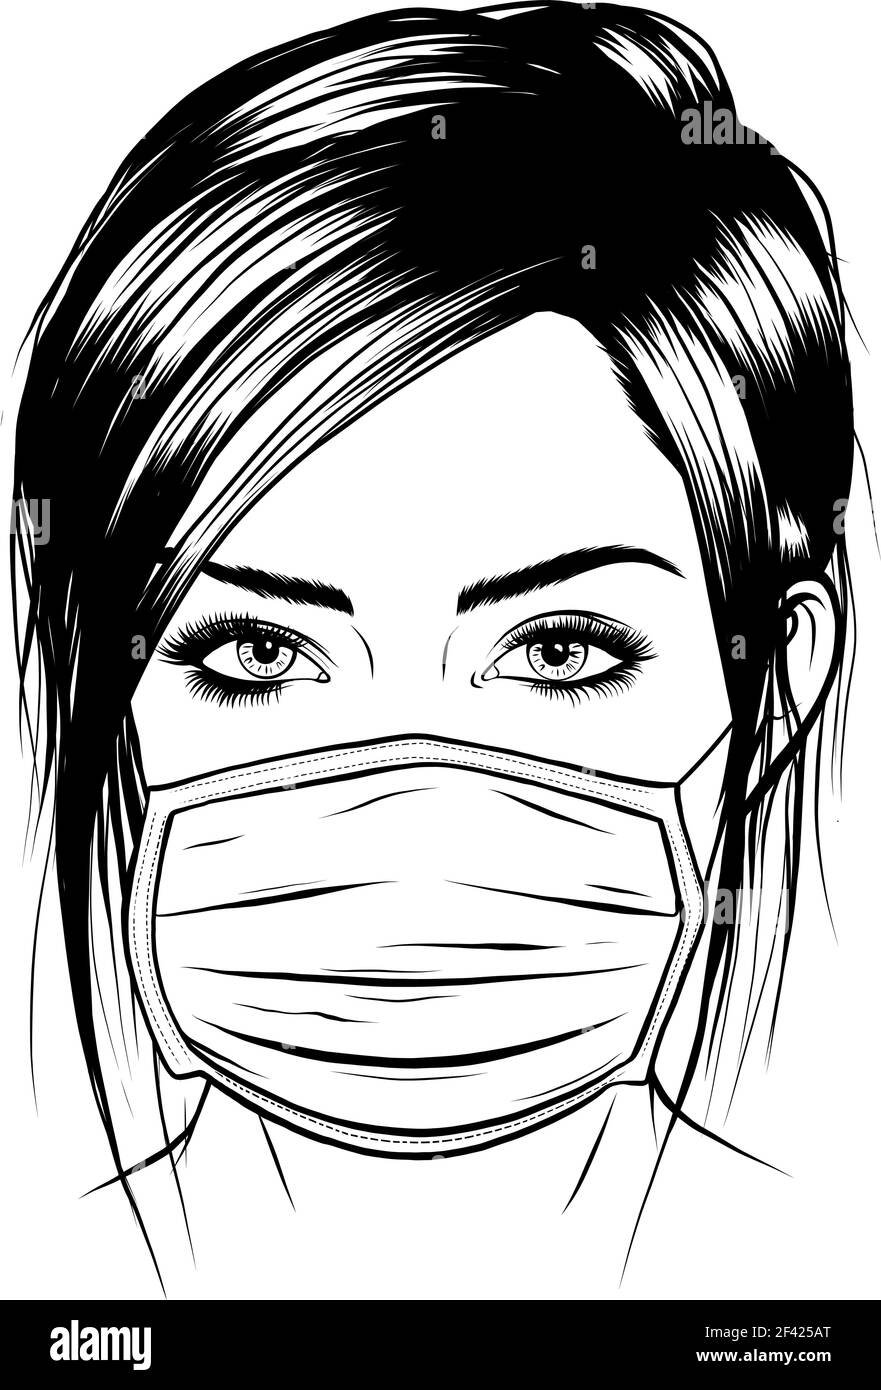 dessiner en noir et blanc de la fille avec un masque chirurgical médical.  Illustration vectorielle Image Vectorielle Stock - Alamy